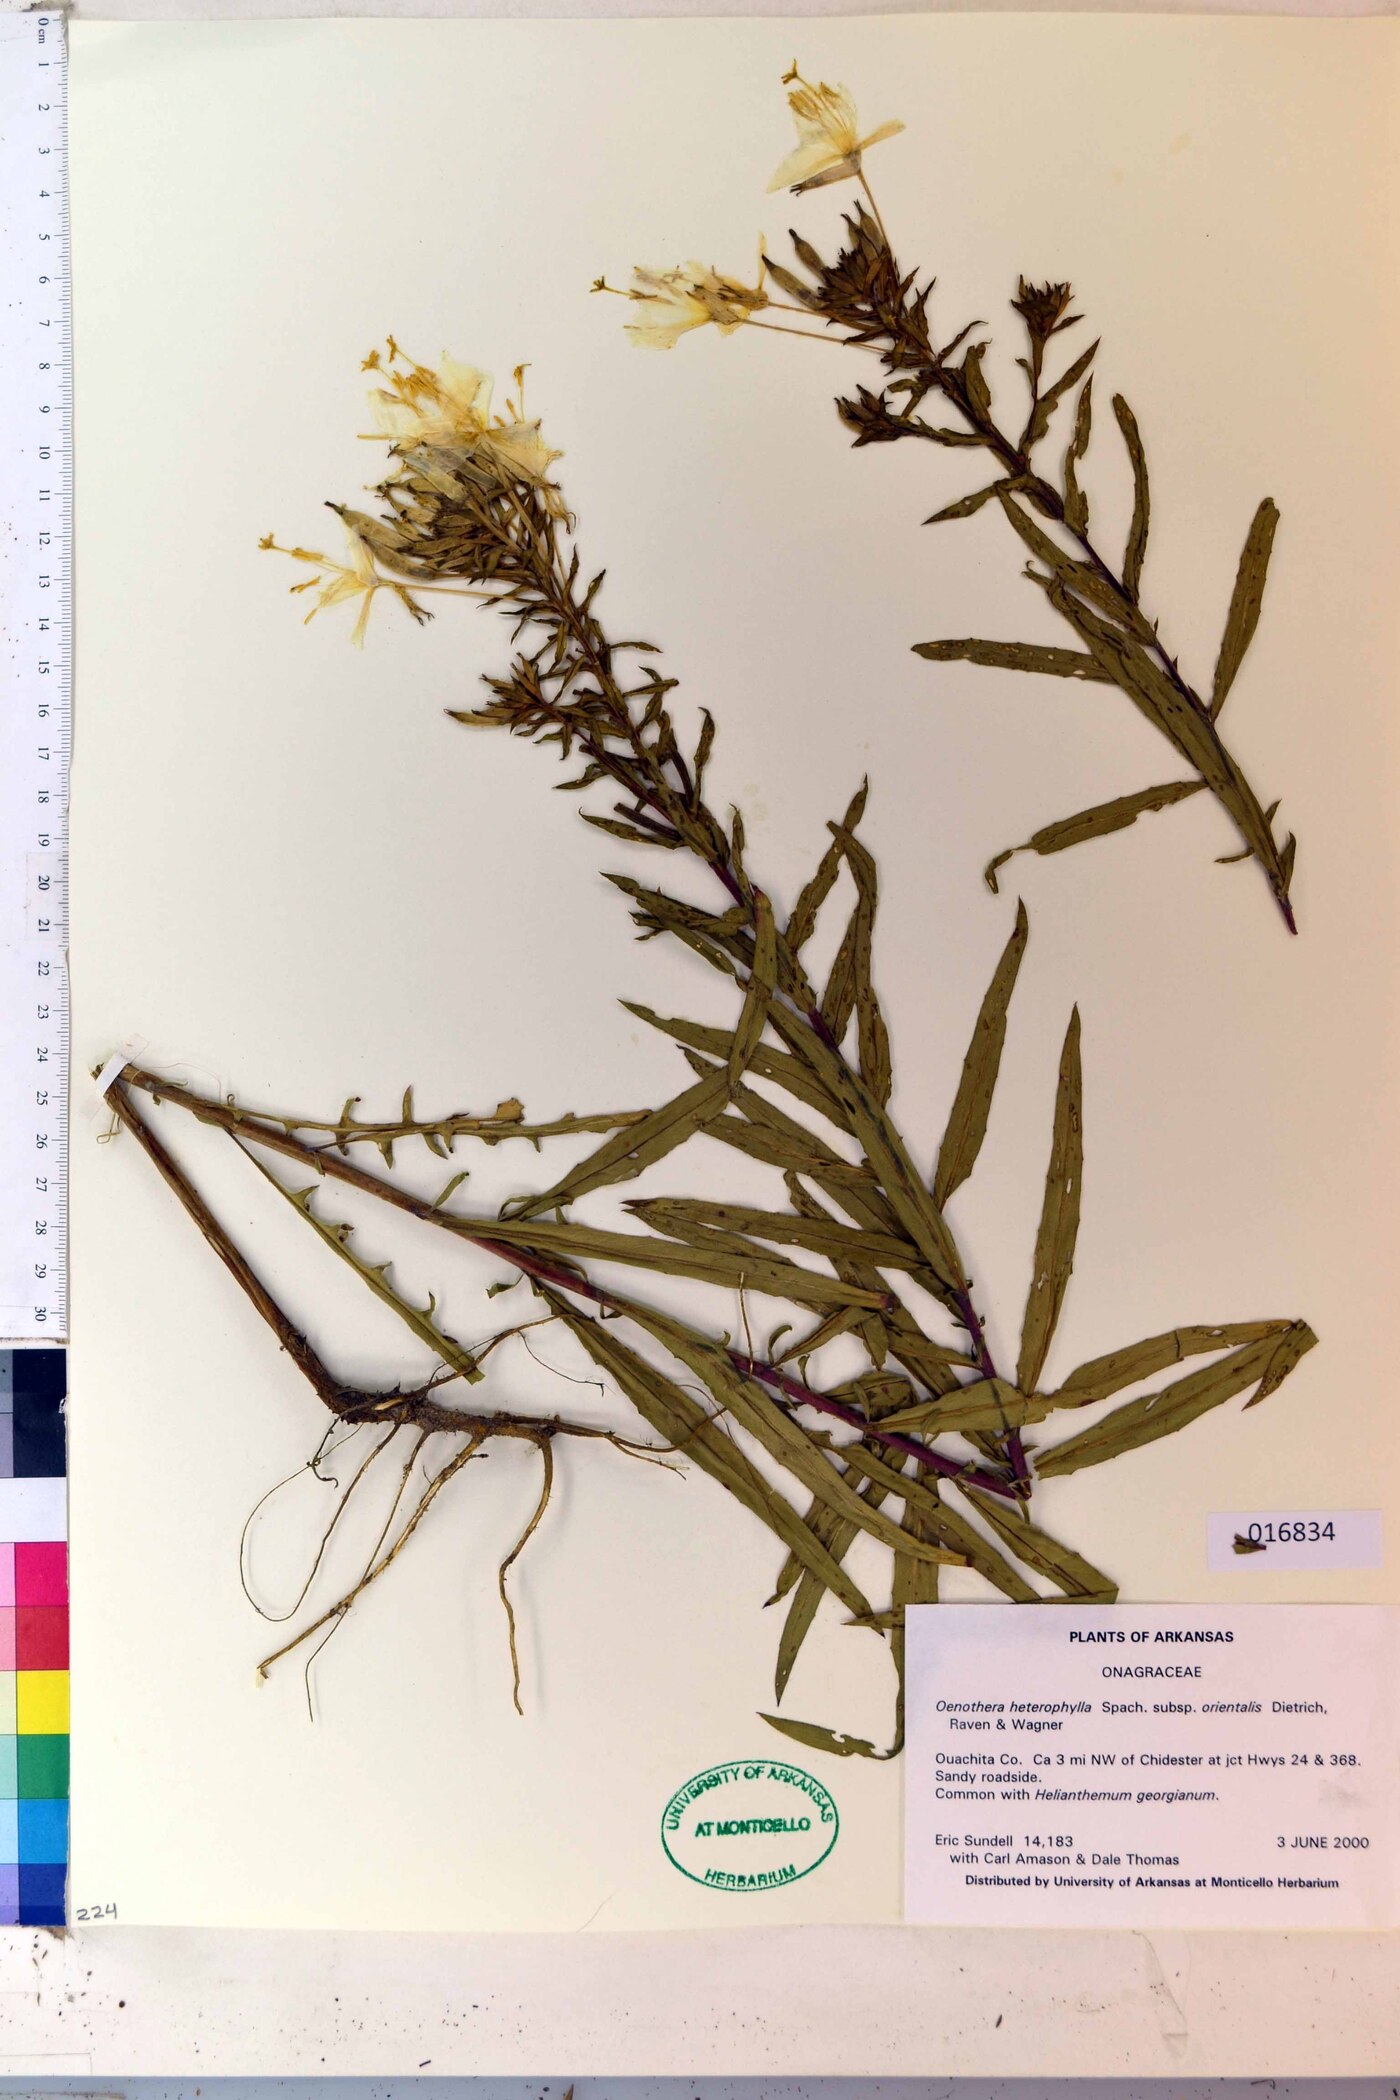 Oenothera heterophylla subsp. orientalis image